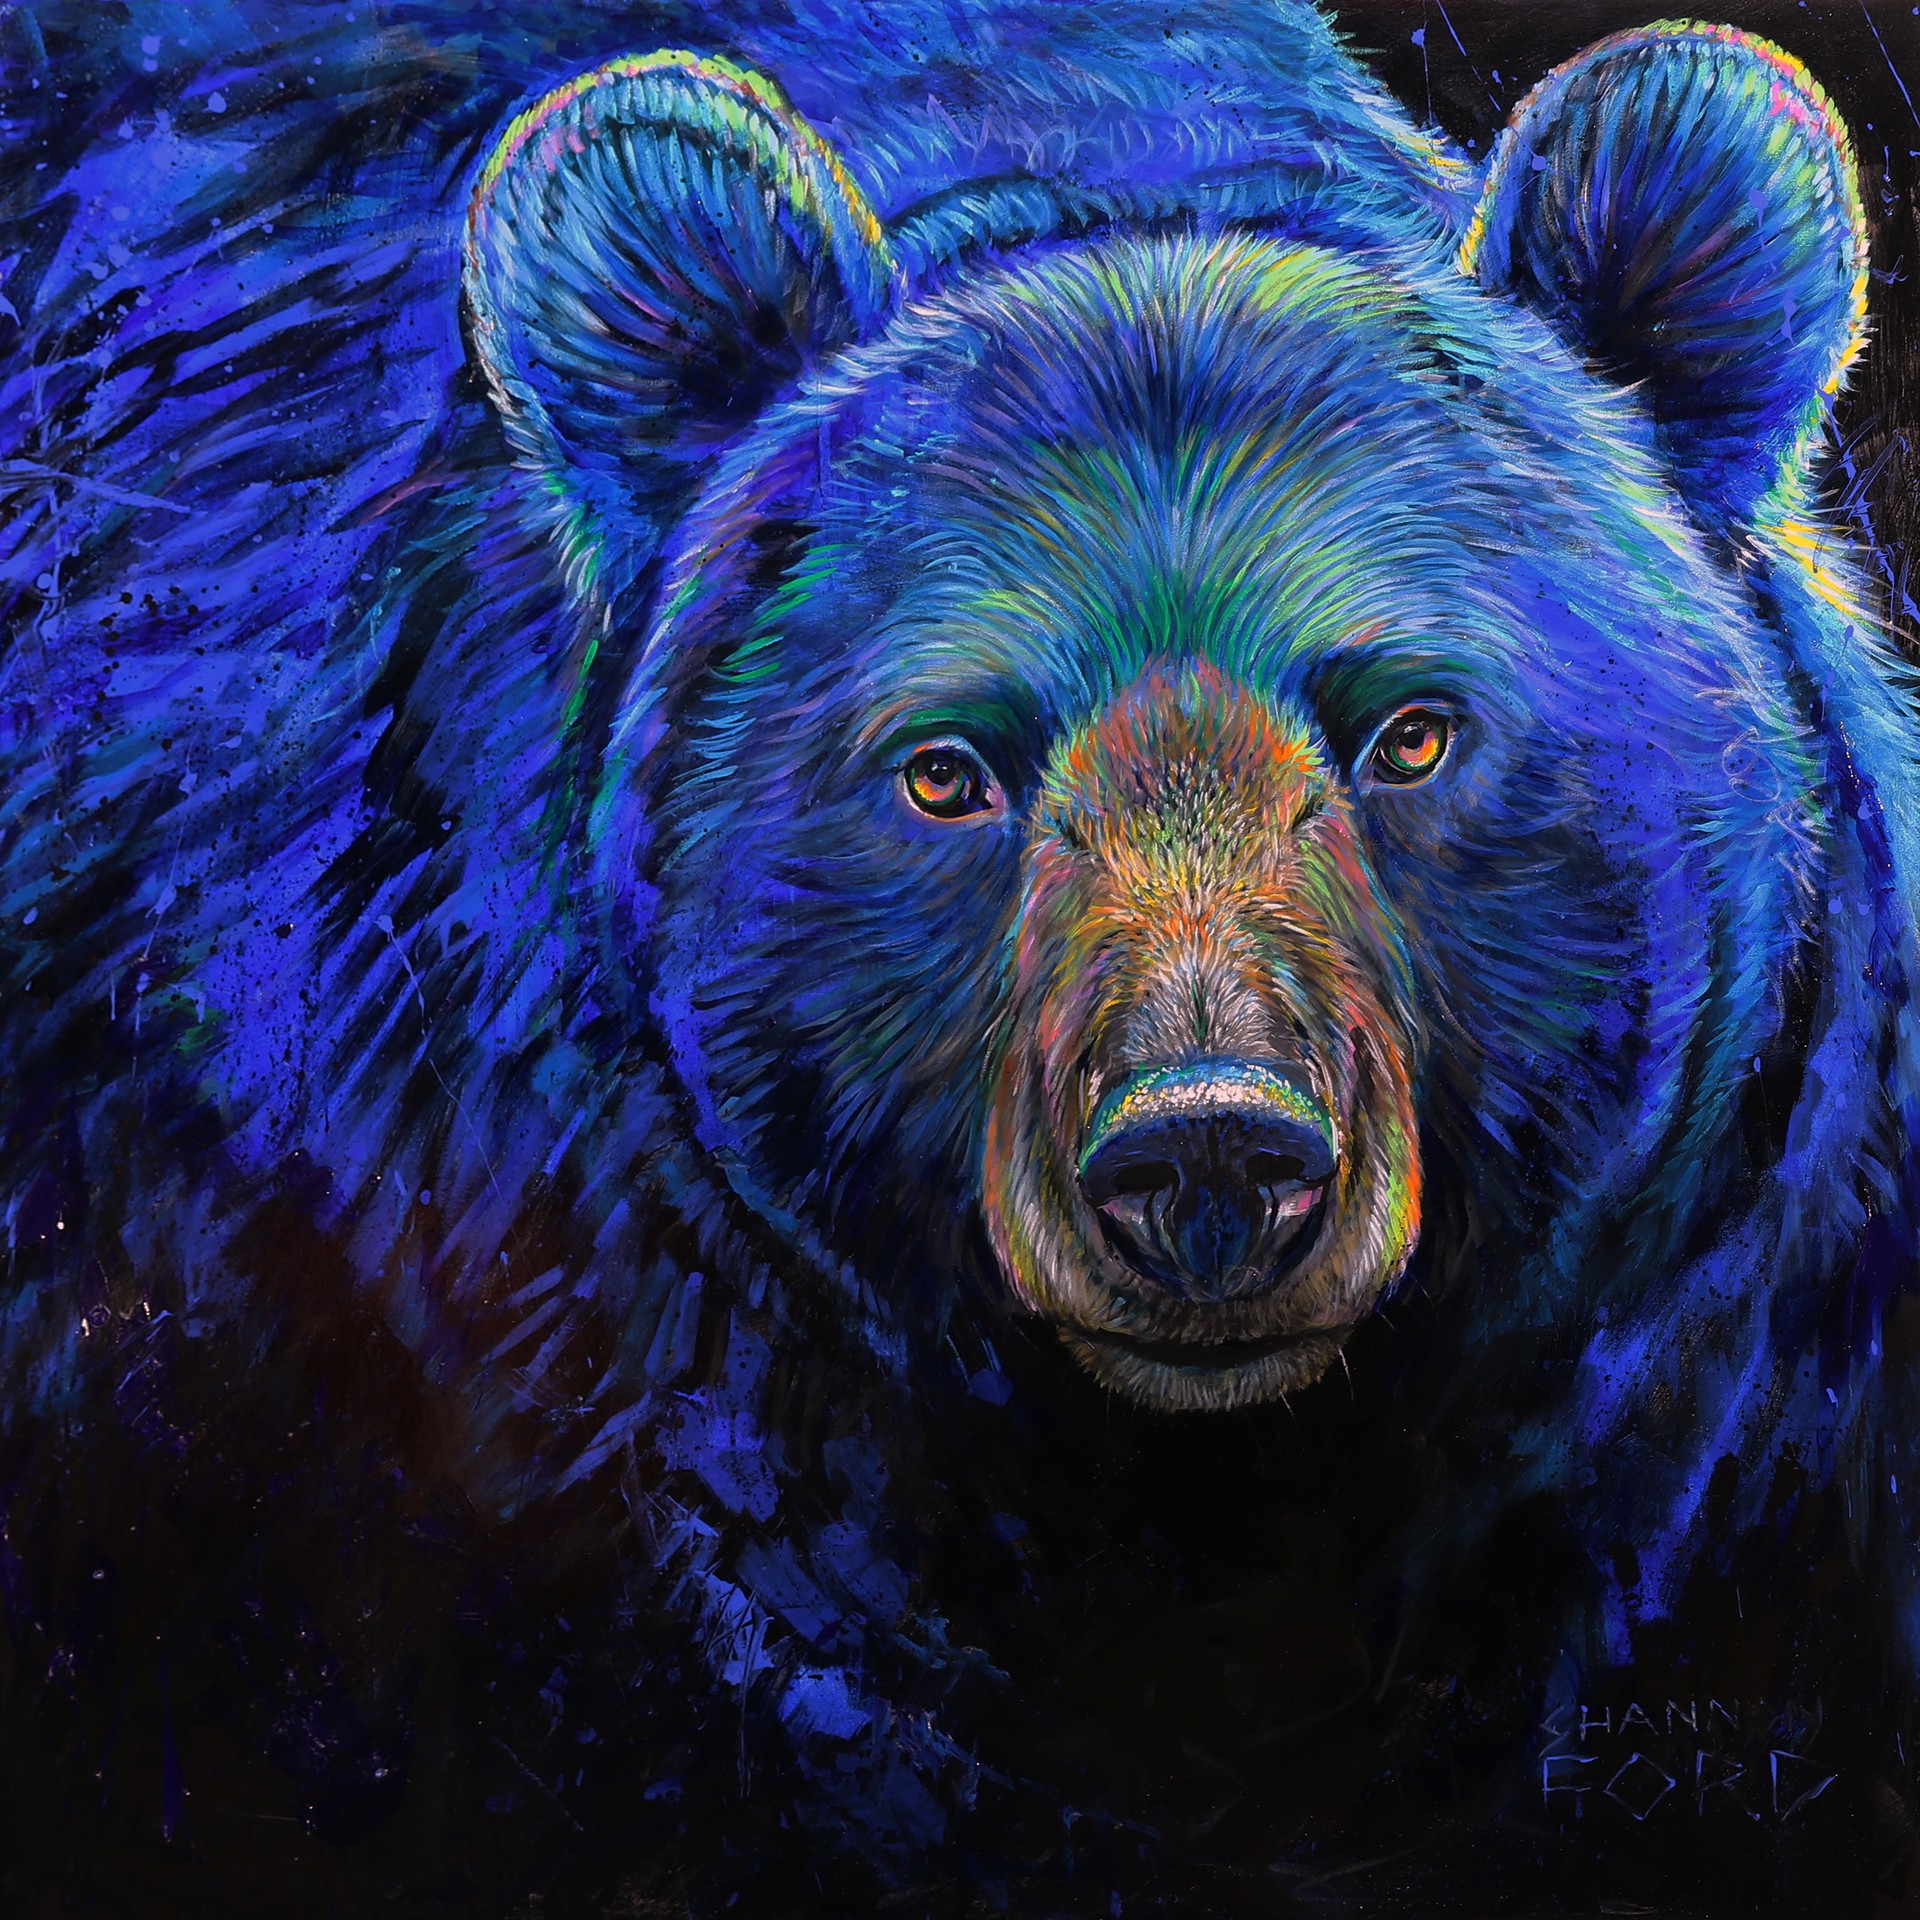 Black Bear Wonder by Shannon Ford